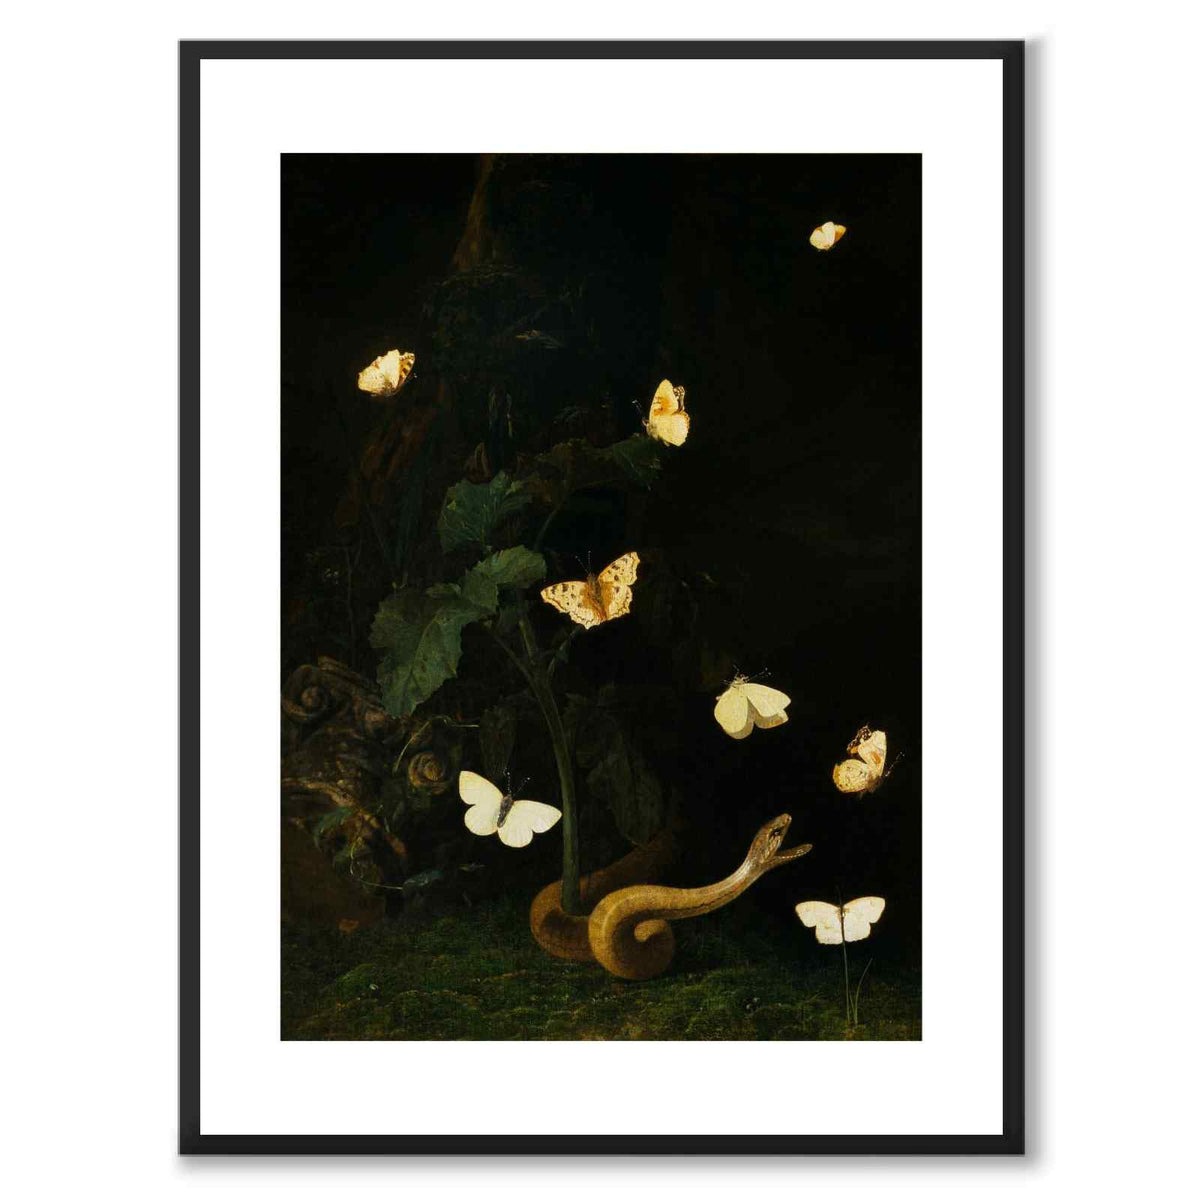 Herbs, Butterflies and a Serpent - Poster